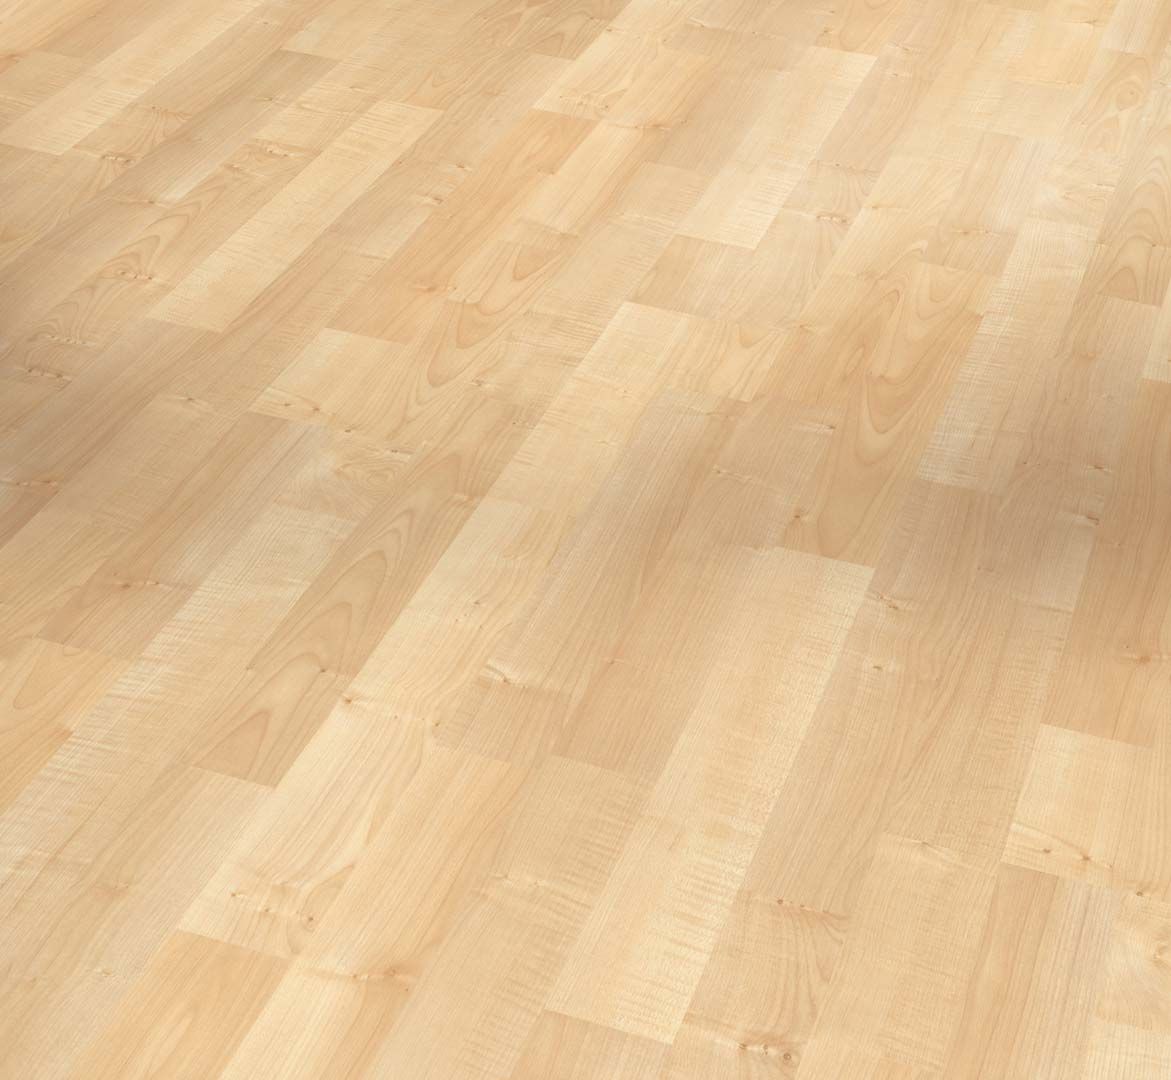 Parador Laminate Basic 200 Maple, Maple Hardwood Laminate Flooring